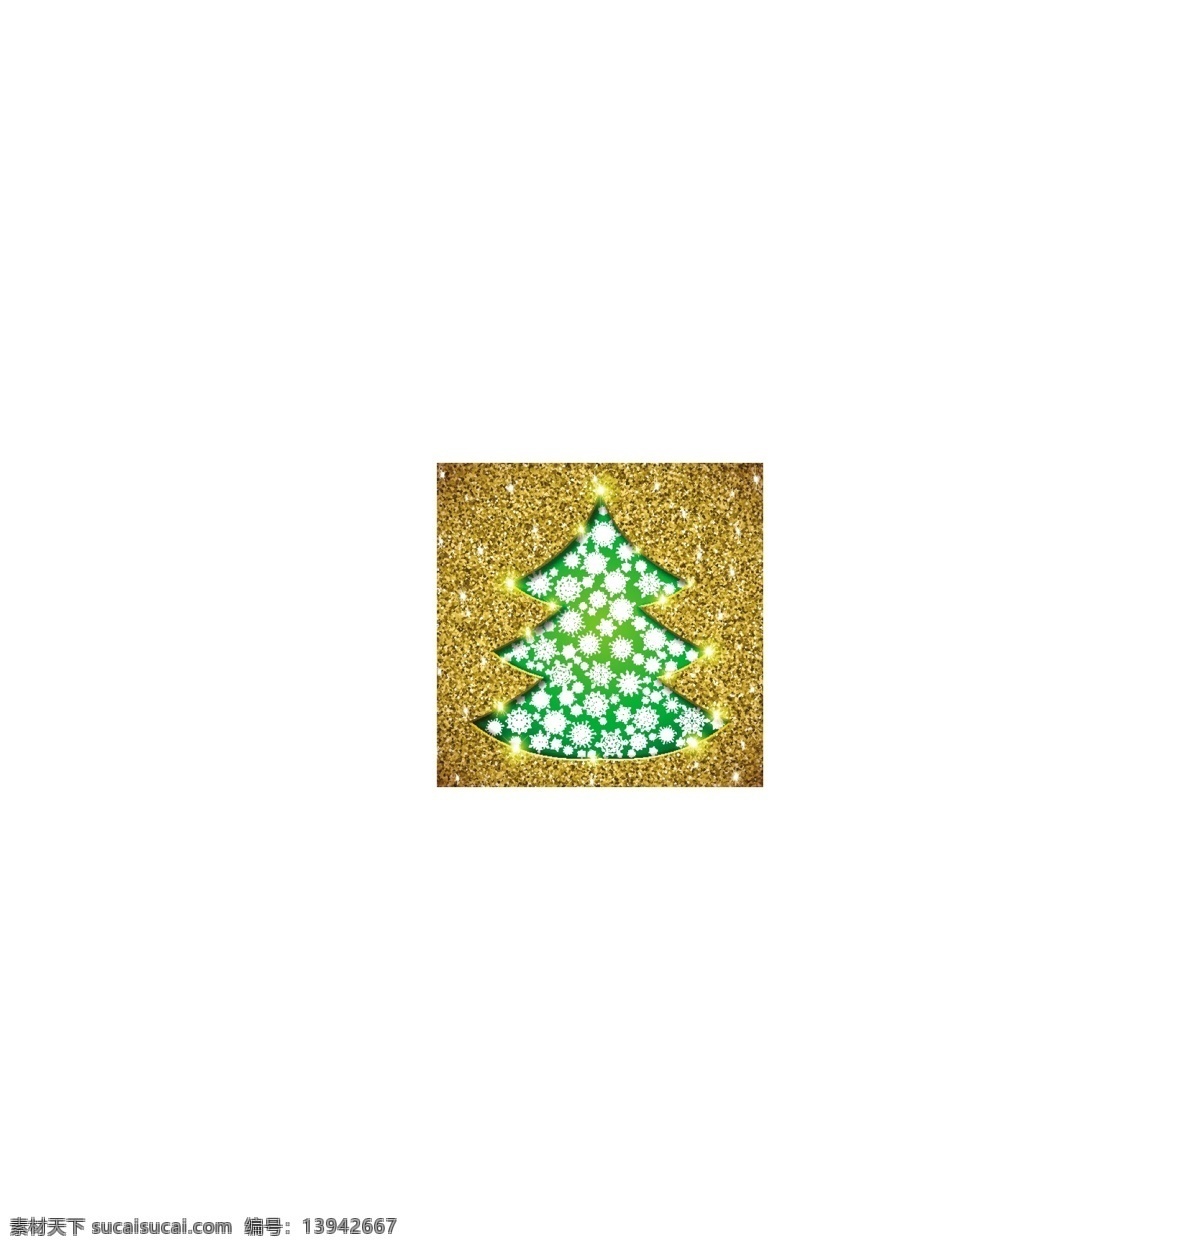 圣诞 吊球 圣诞树 矢量素材 矢量图 设计素材 创意设计 圣诞节 节日素材 金色 彩灯 红色